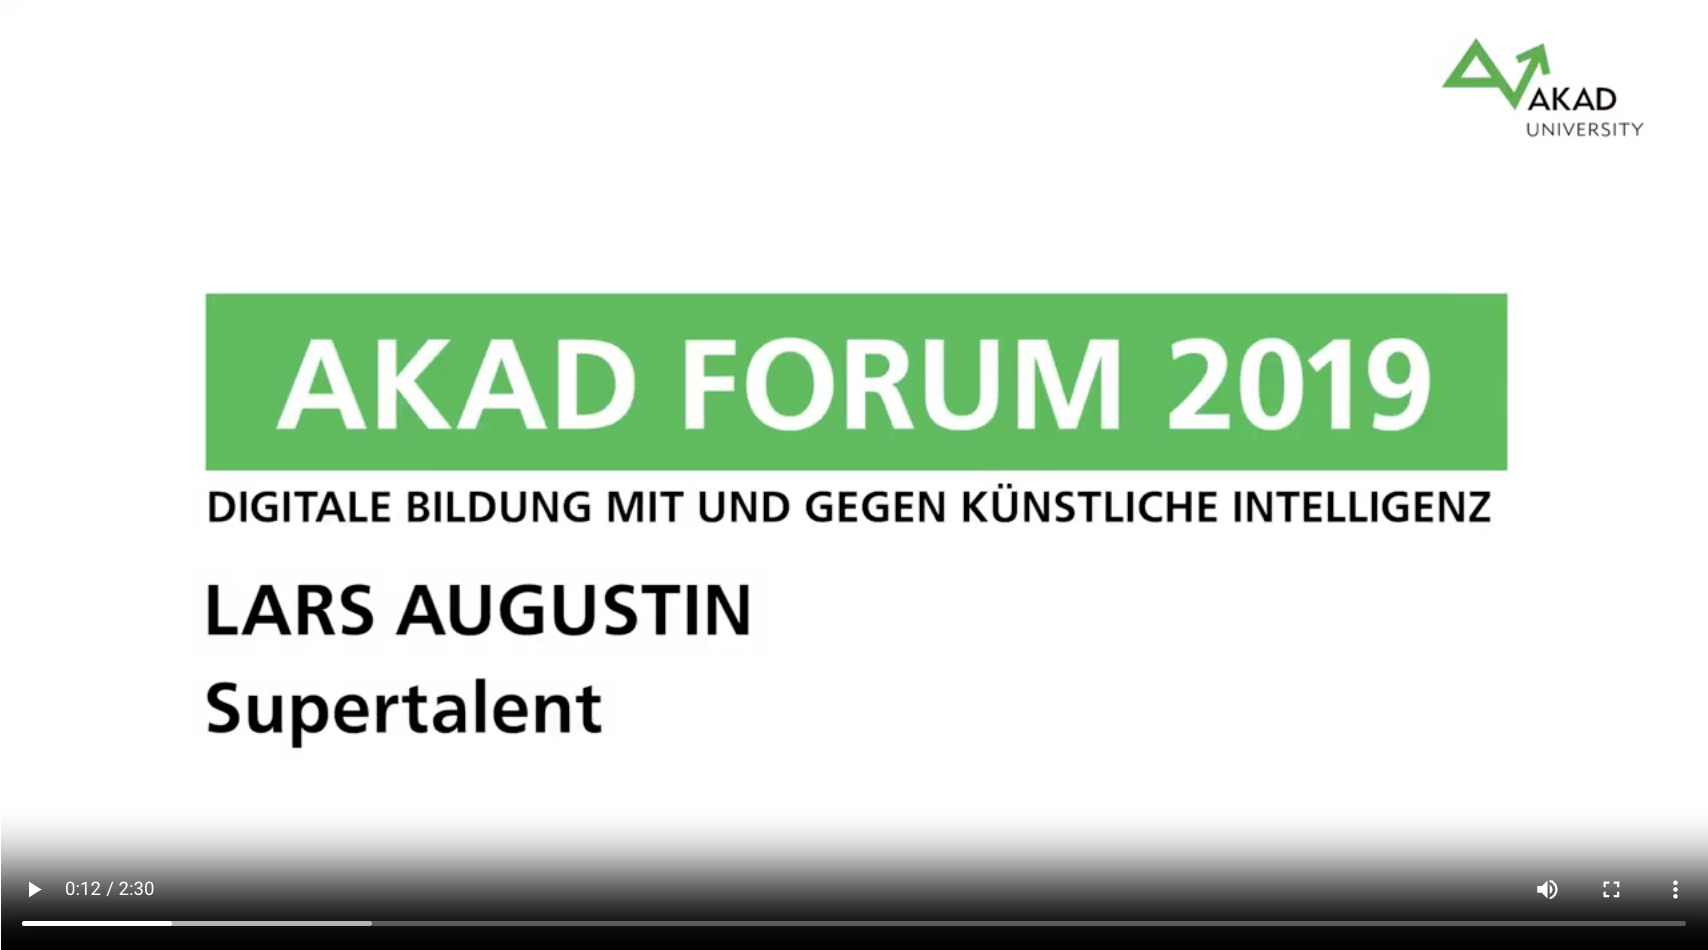 AKAD Forum 2019